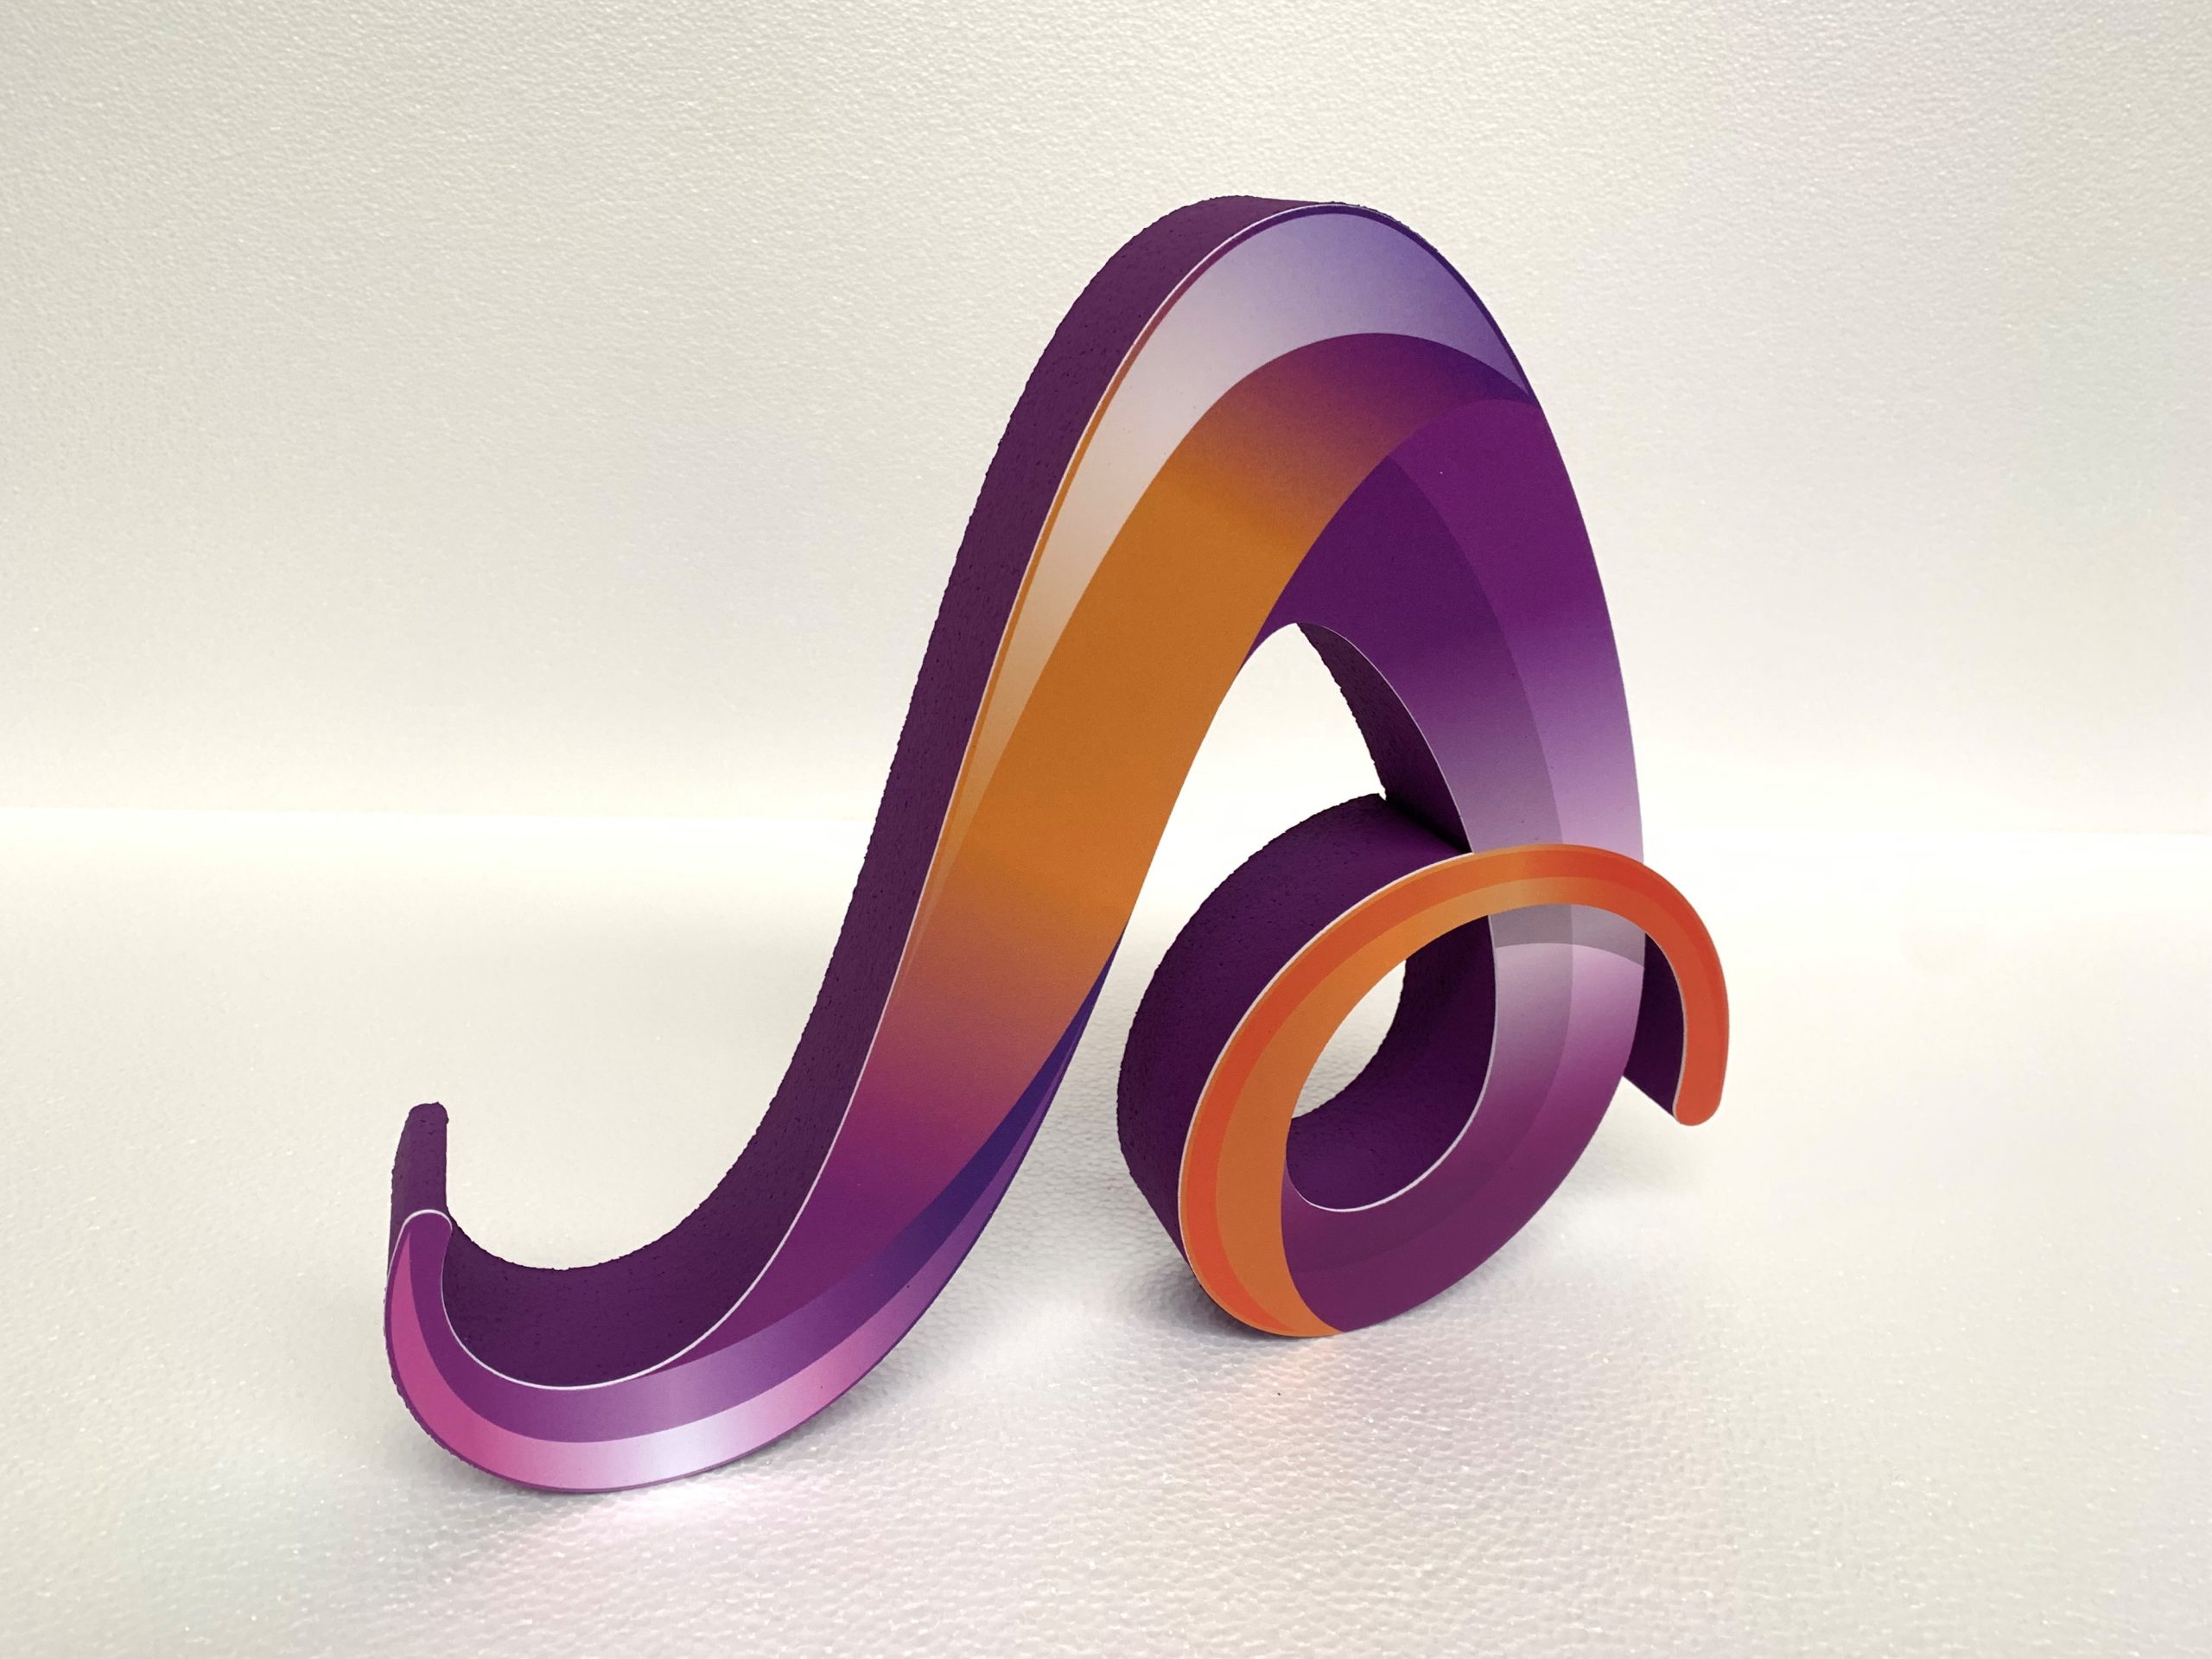 Piepschuim 3D logo met full colour overlay